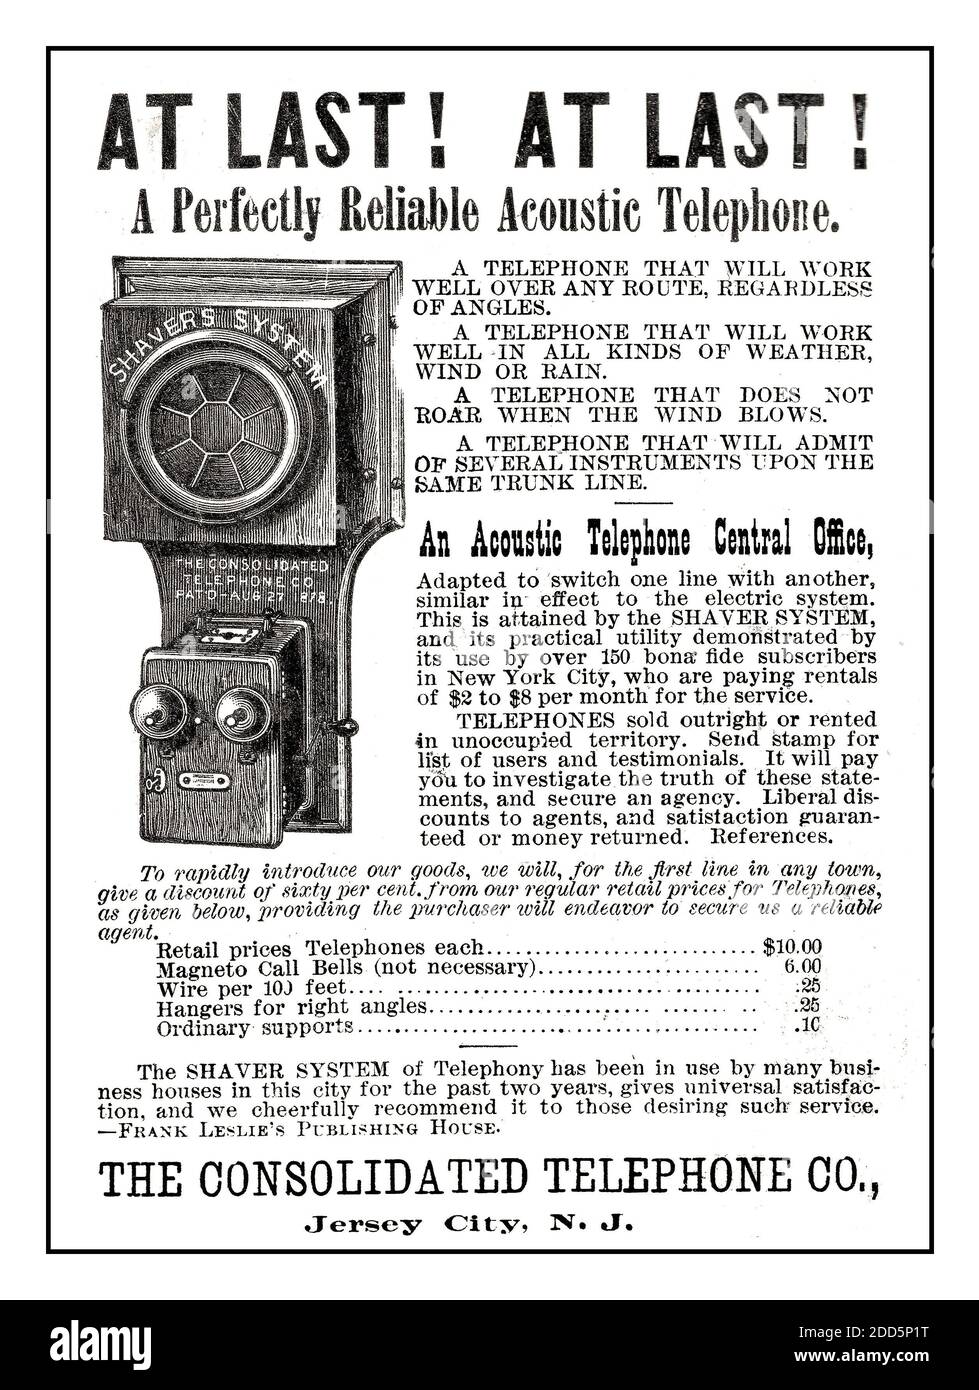 Historique Early Acoustic Telephone annonce de presse des années 1800 Consolidated Telephone Co. Ad 1886. ENFIN ! ENFIN ! Un téléphone acoustique parfaitement fiable Banque D'Images